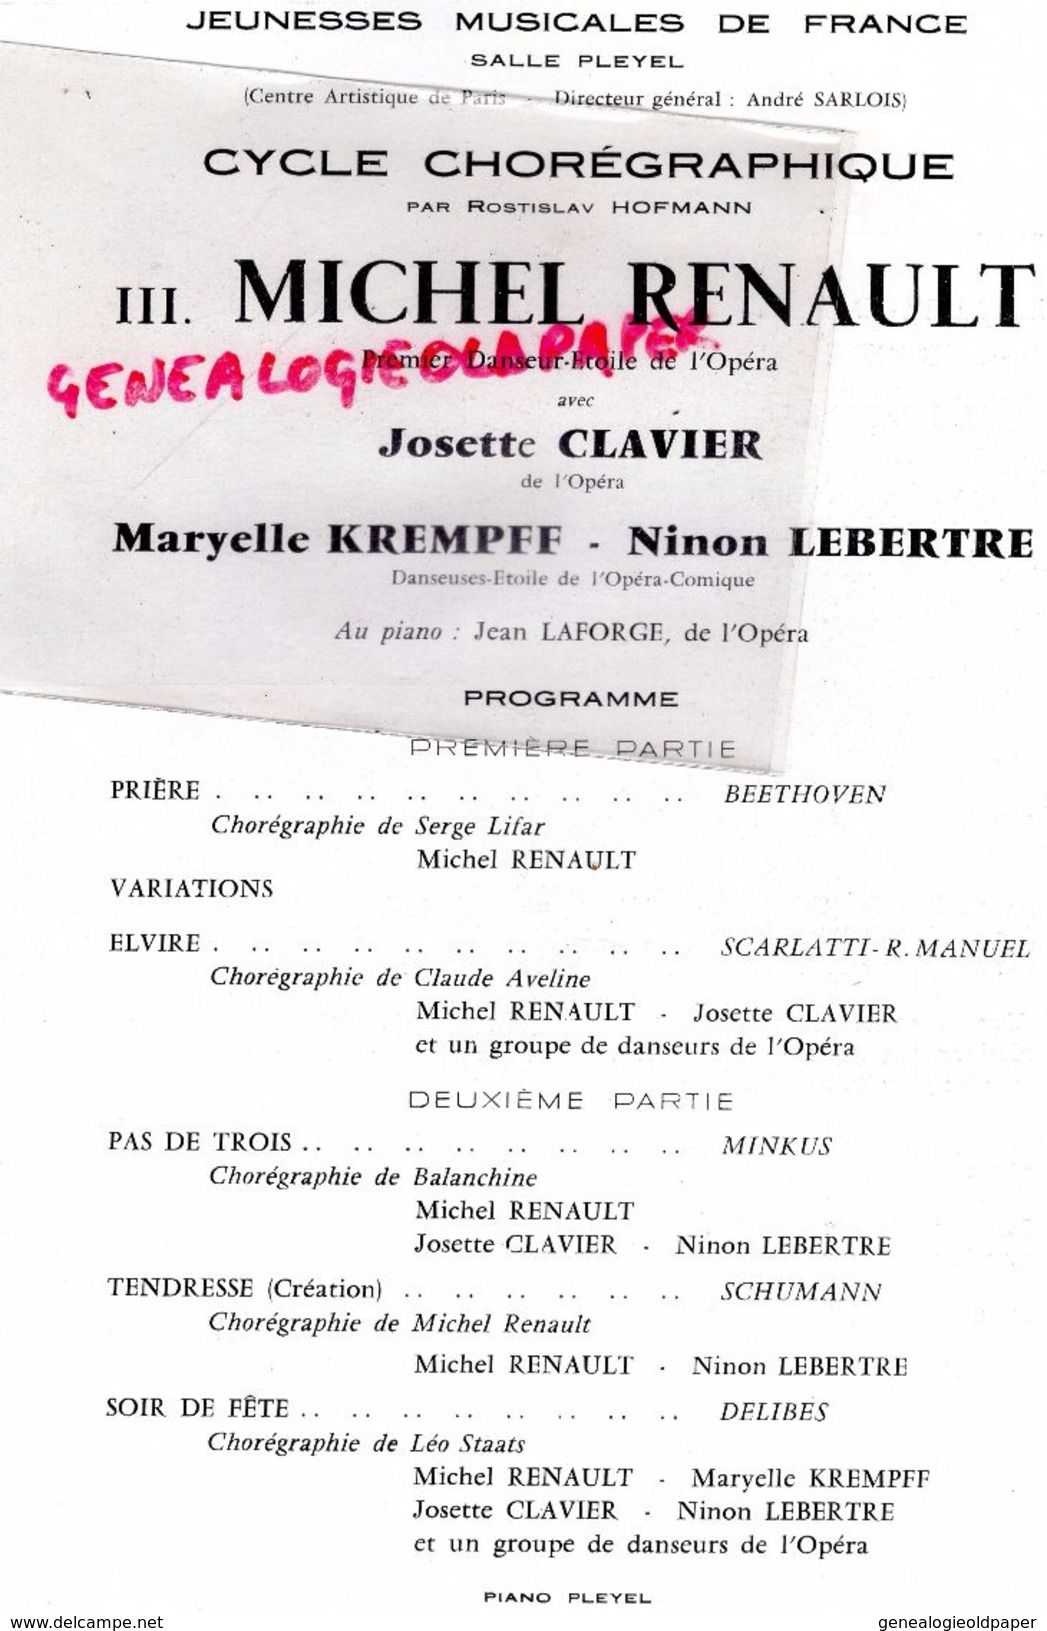 75- PARIS- PROGRAMME SALLE PLEYEL- 14-3-1961-CYCLE CHOREGRAPHIQUE DANSE-ROSTILAV HOFFMANN-MICHEL RENAULT-JOSETTE CLAVIER